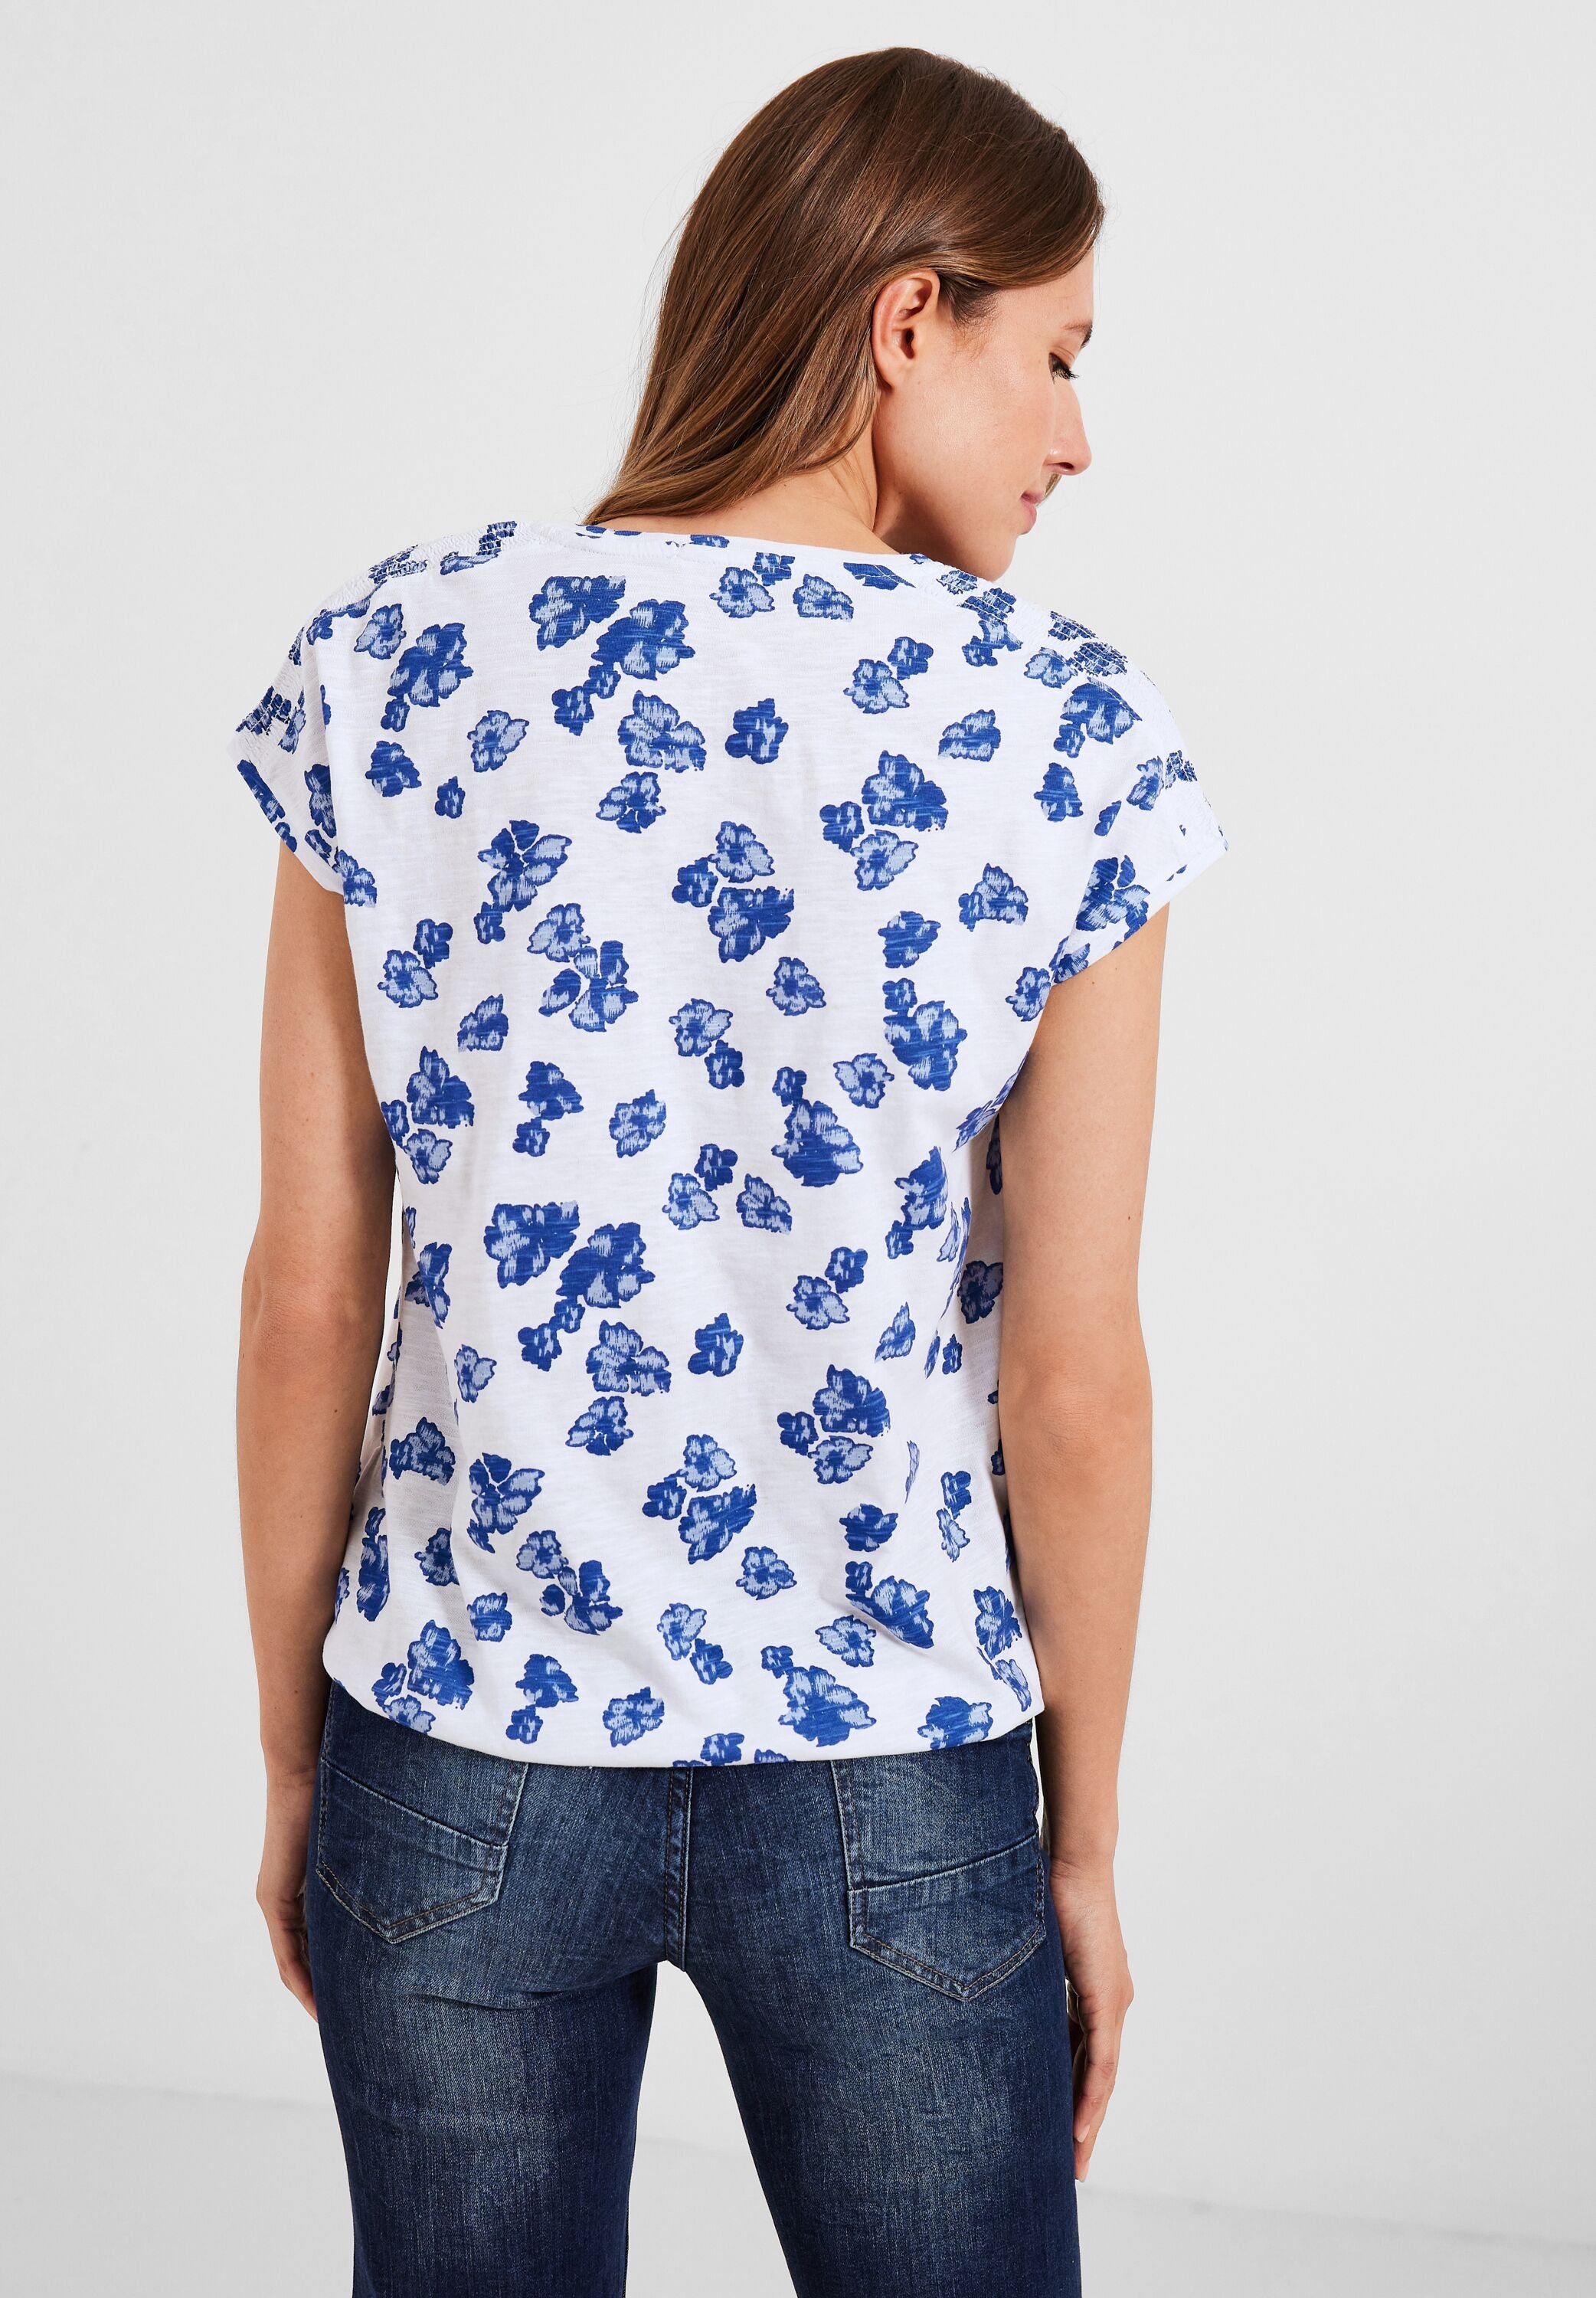 Cecil Print-Shirt aus reiner Damenshirt Baumwolle, mit Smockdetail